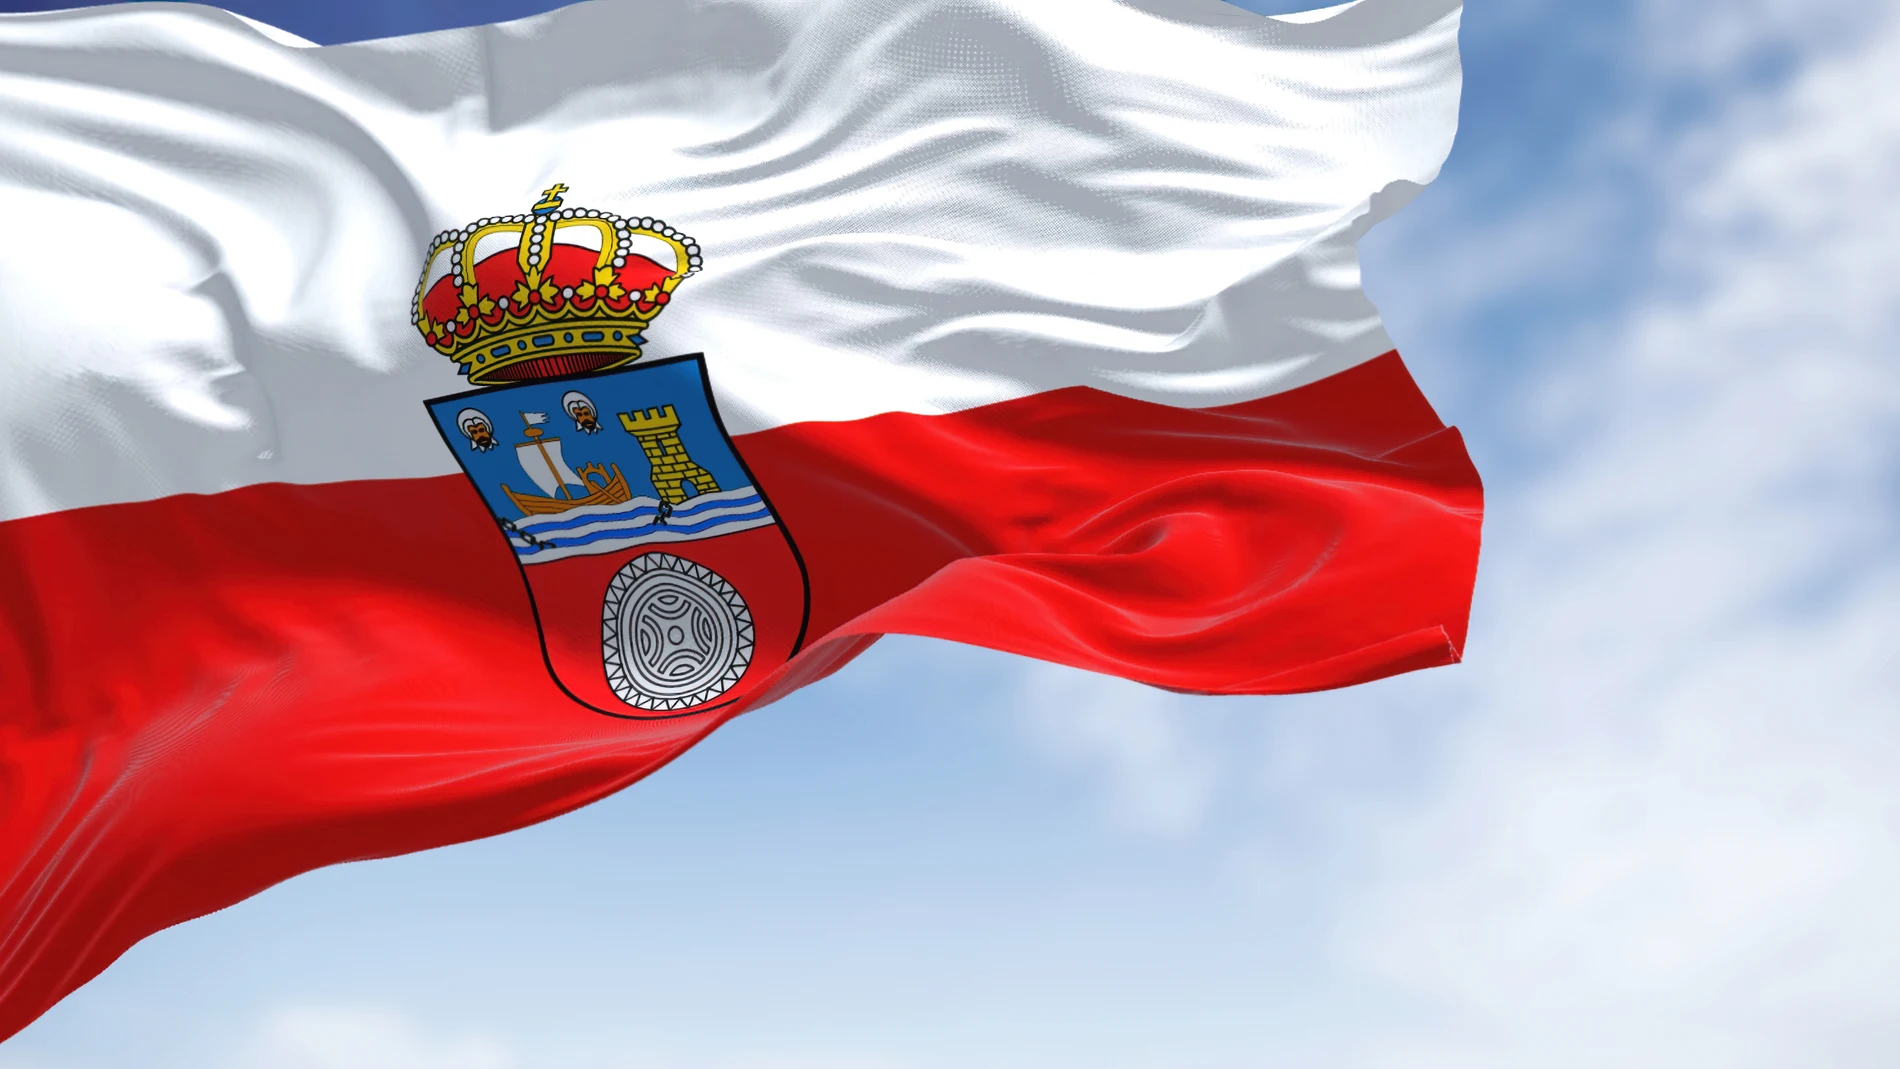 La bandera de Cantabria ondeando al viento.